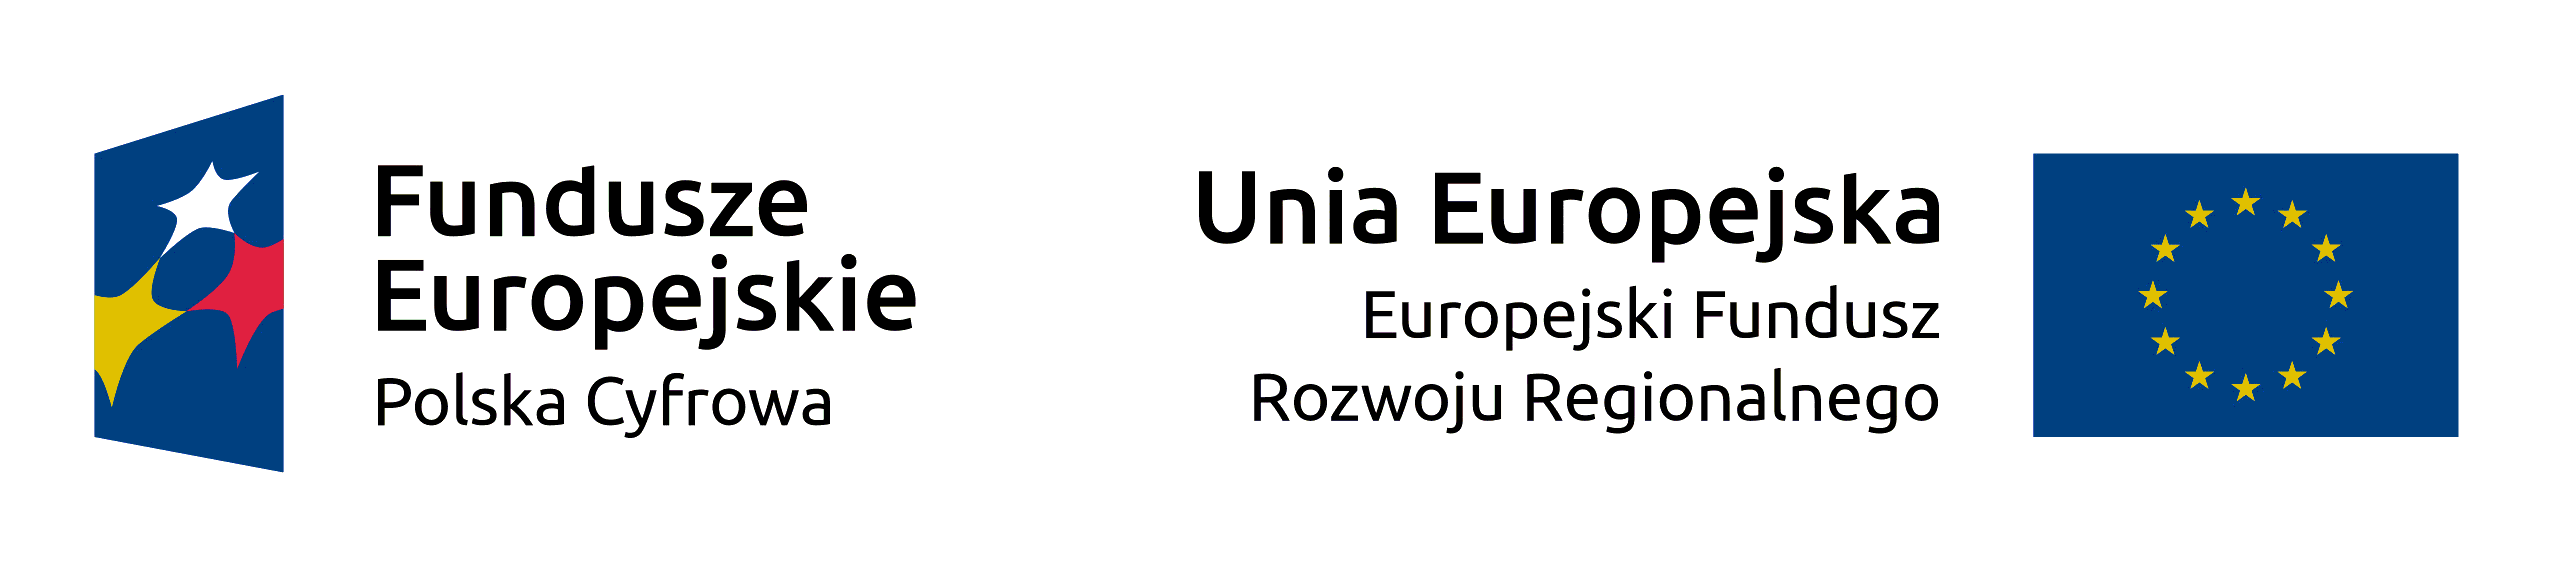 Logo Funduszy Europejskich i Flaga Unii Europejskiej